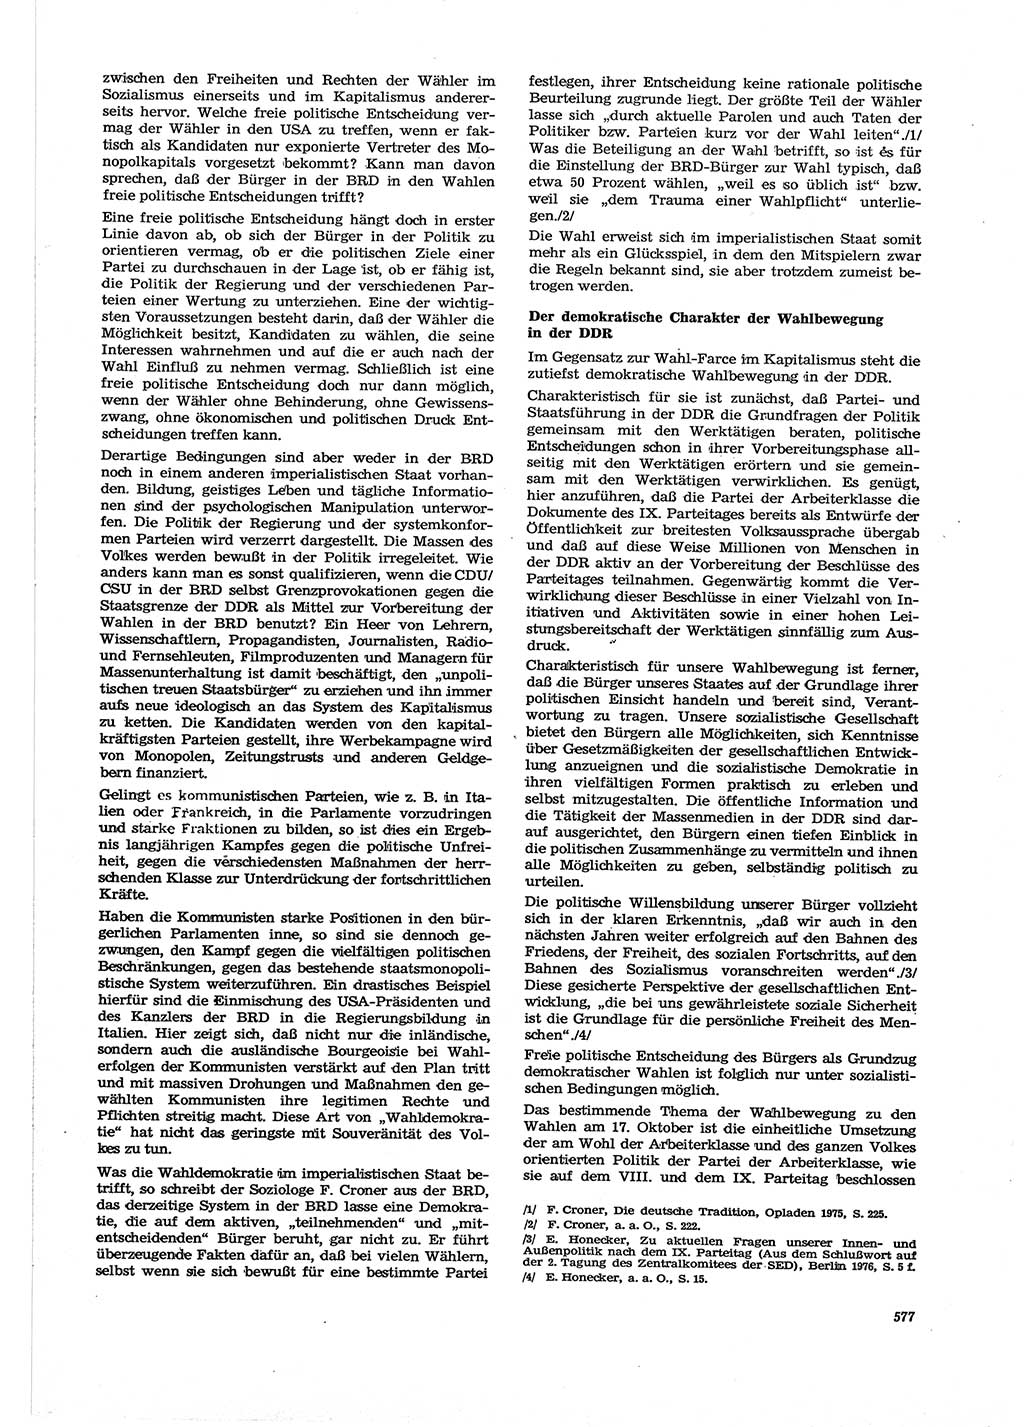 Neue Justiz (NJ), Zeitschrift für Recht und Rechtswissenschaft [Deutsche Demokratische Republik (DDR)], 30. Jahrgang 1976, Seite 577 (NJ DDR 1976, S. 577)